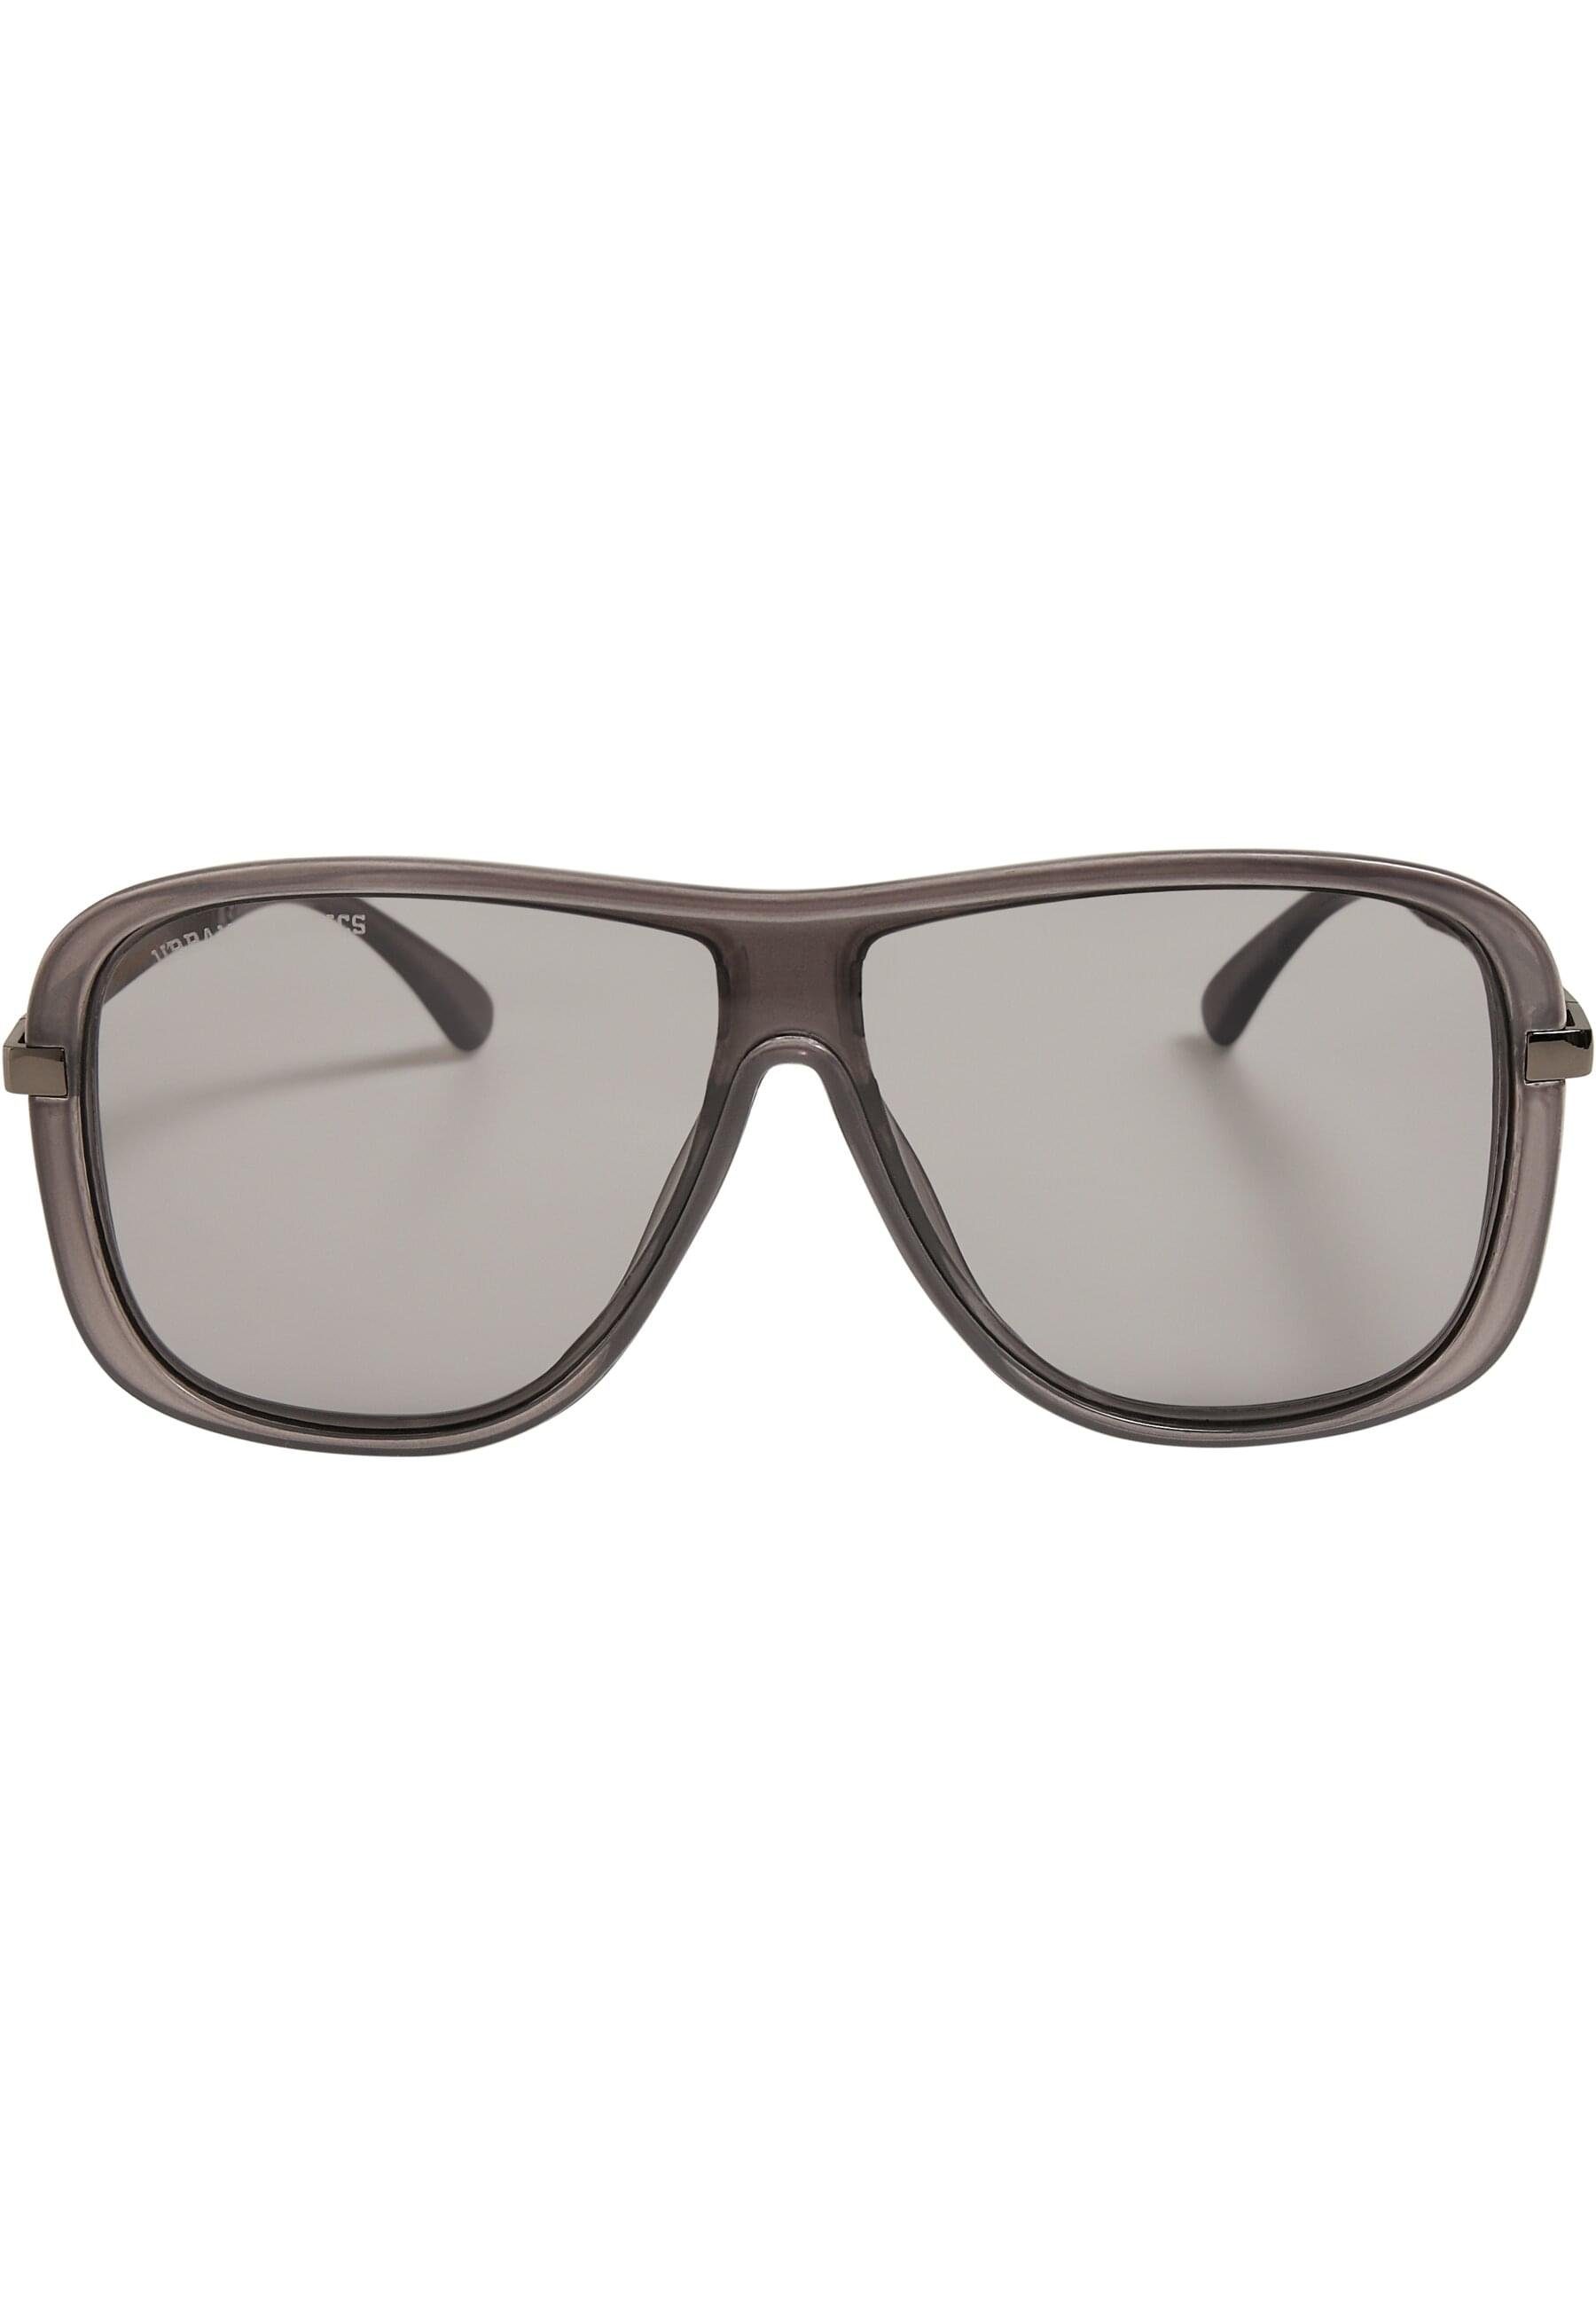 Sonnenbrille Milos CLASSICS Unisex Sunglasses 2-Pack URBAN